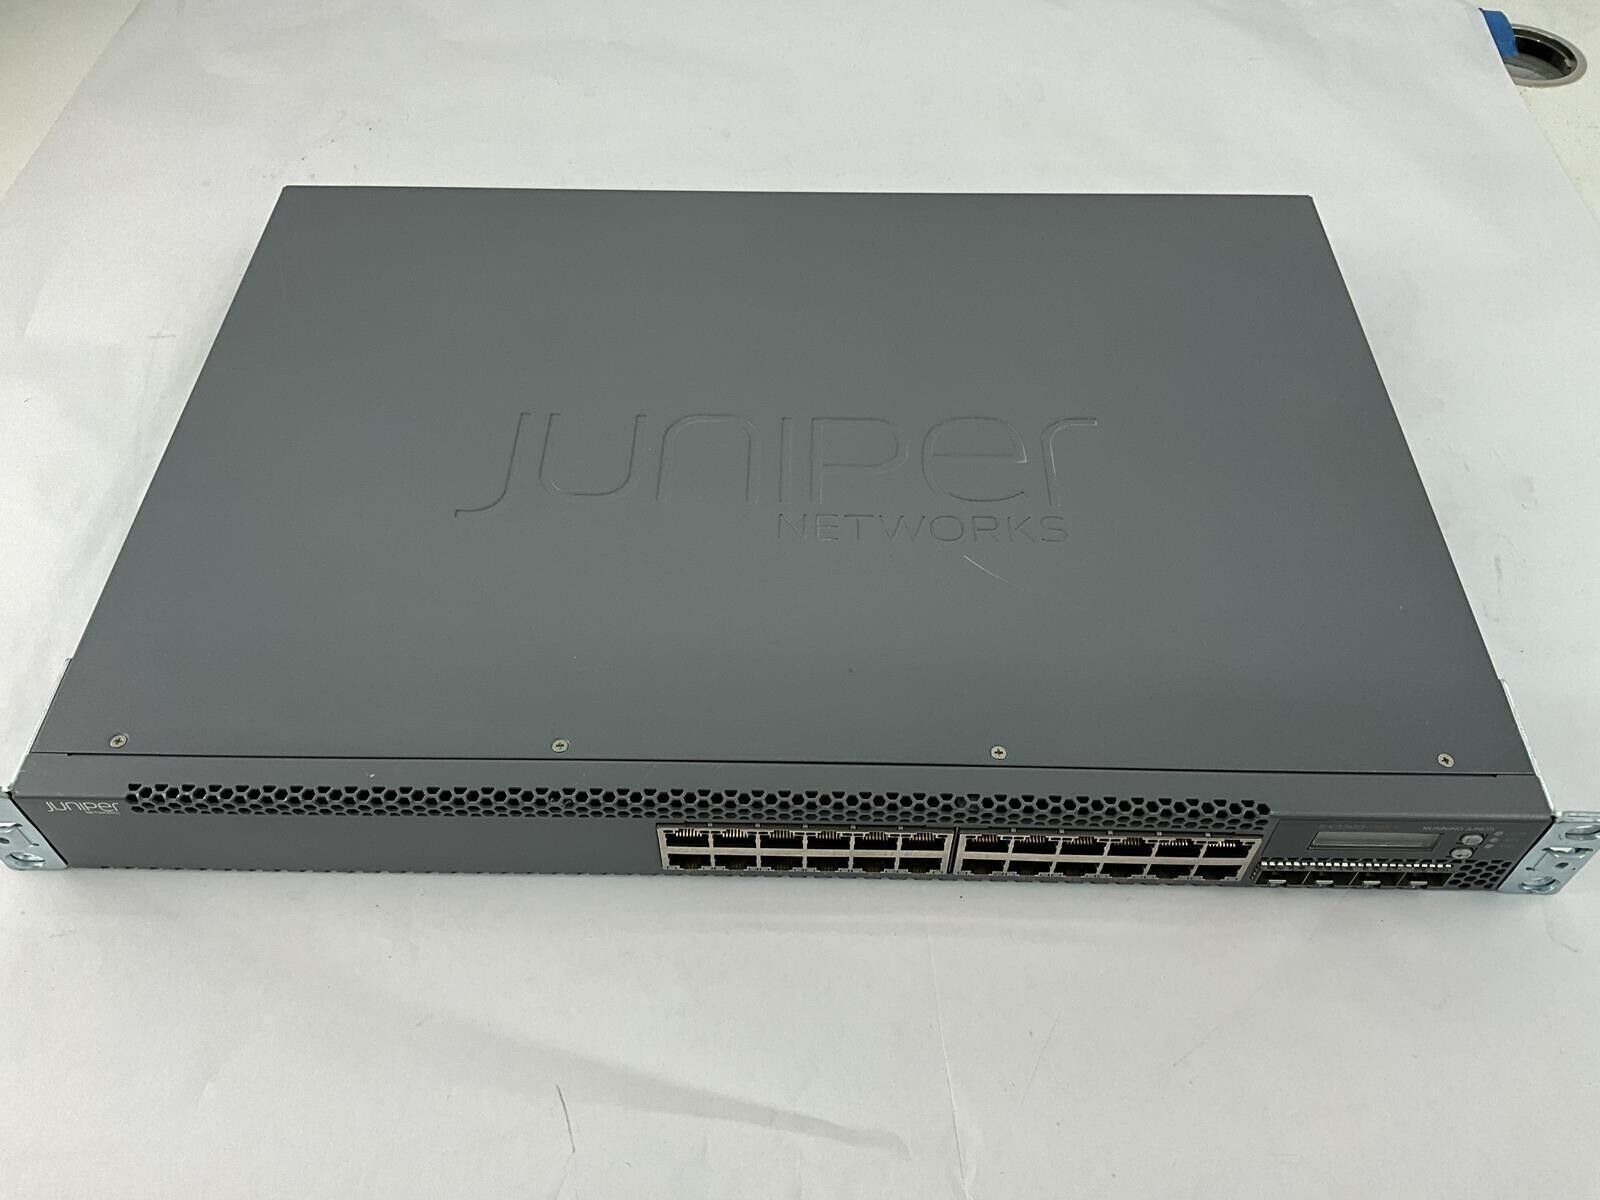 Juniper EX3300-24P Juniper 24 Port Gigabit PoE+ Switch 4 SFP 10G